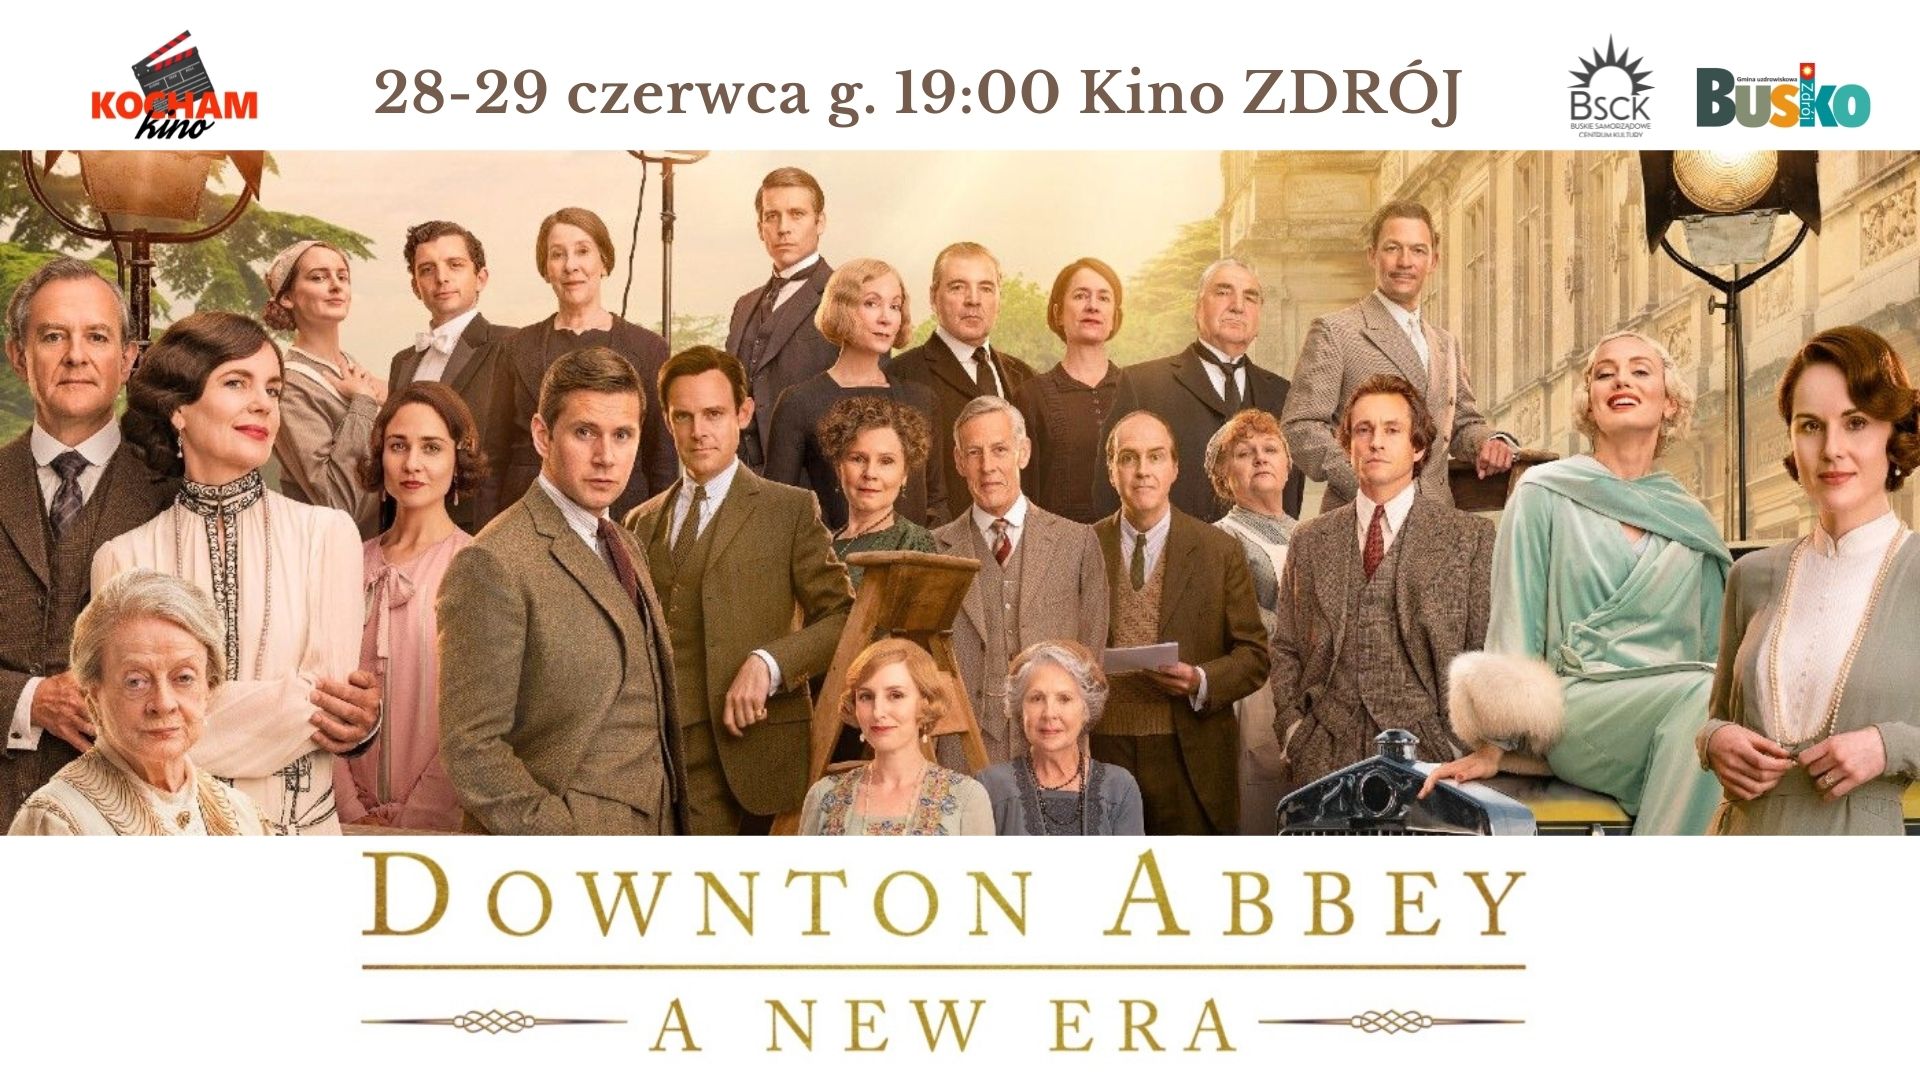 Grafika promująca seans filmu Downton Abbey. Widać grupę elegancko ubranych osób pozujących do zdjęcia na tle zabudowań miejskich